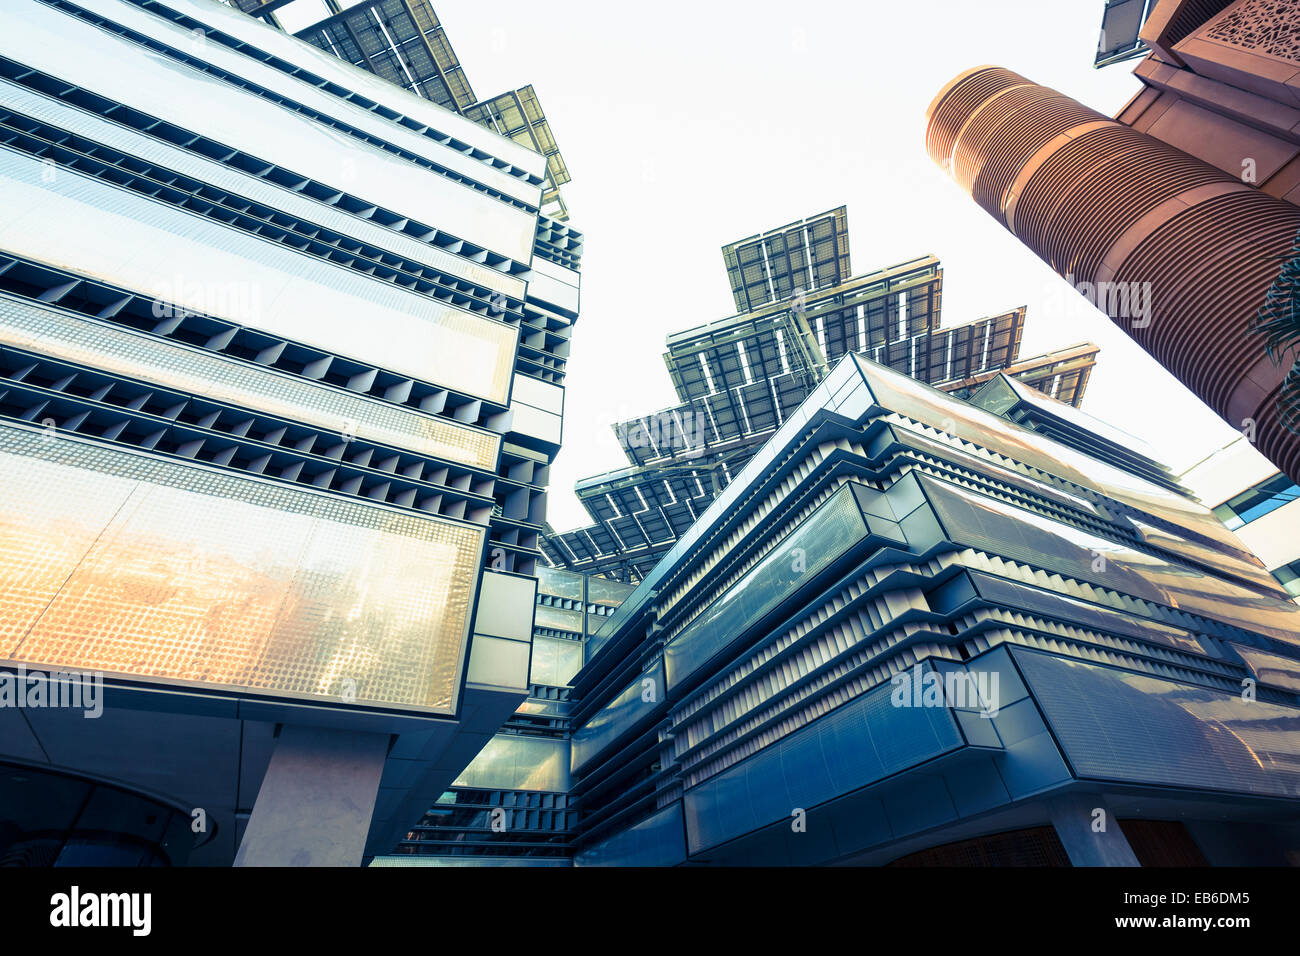 Moderne Architektur mit Sonnenkollektoren auf dem Dach, Institut für Wissenschaft und Technologie in Masdar City Abu Dhabi Vereinigte Arabische Emirate Stockfoto